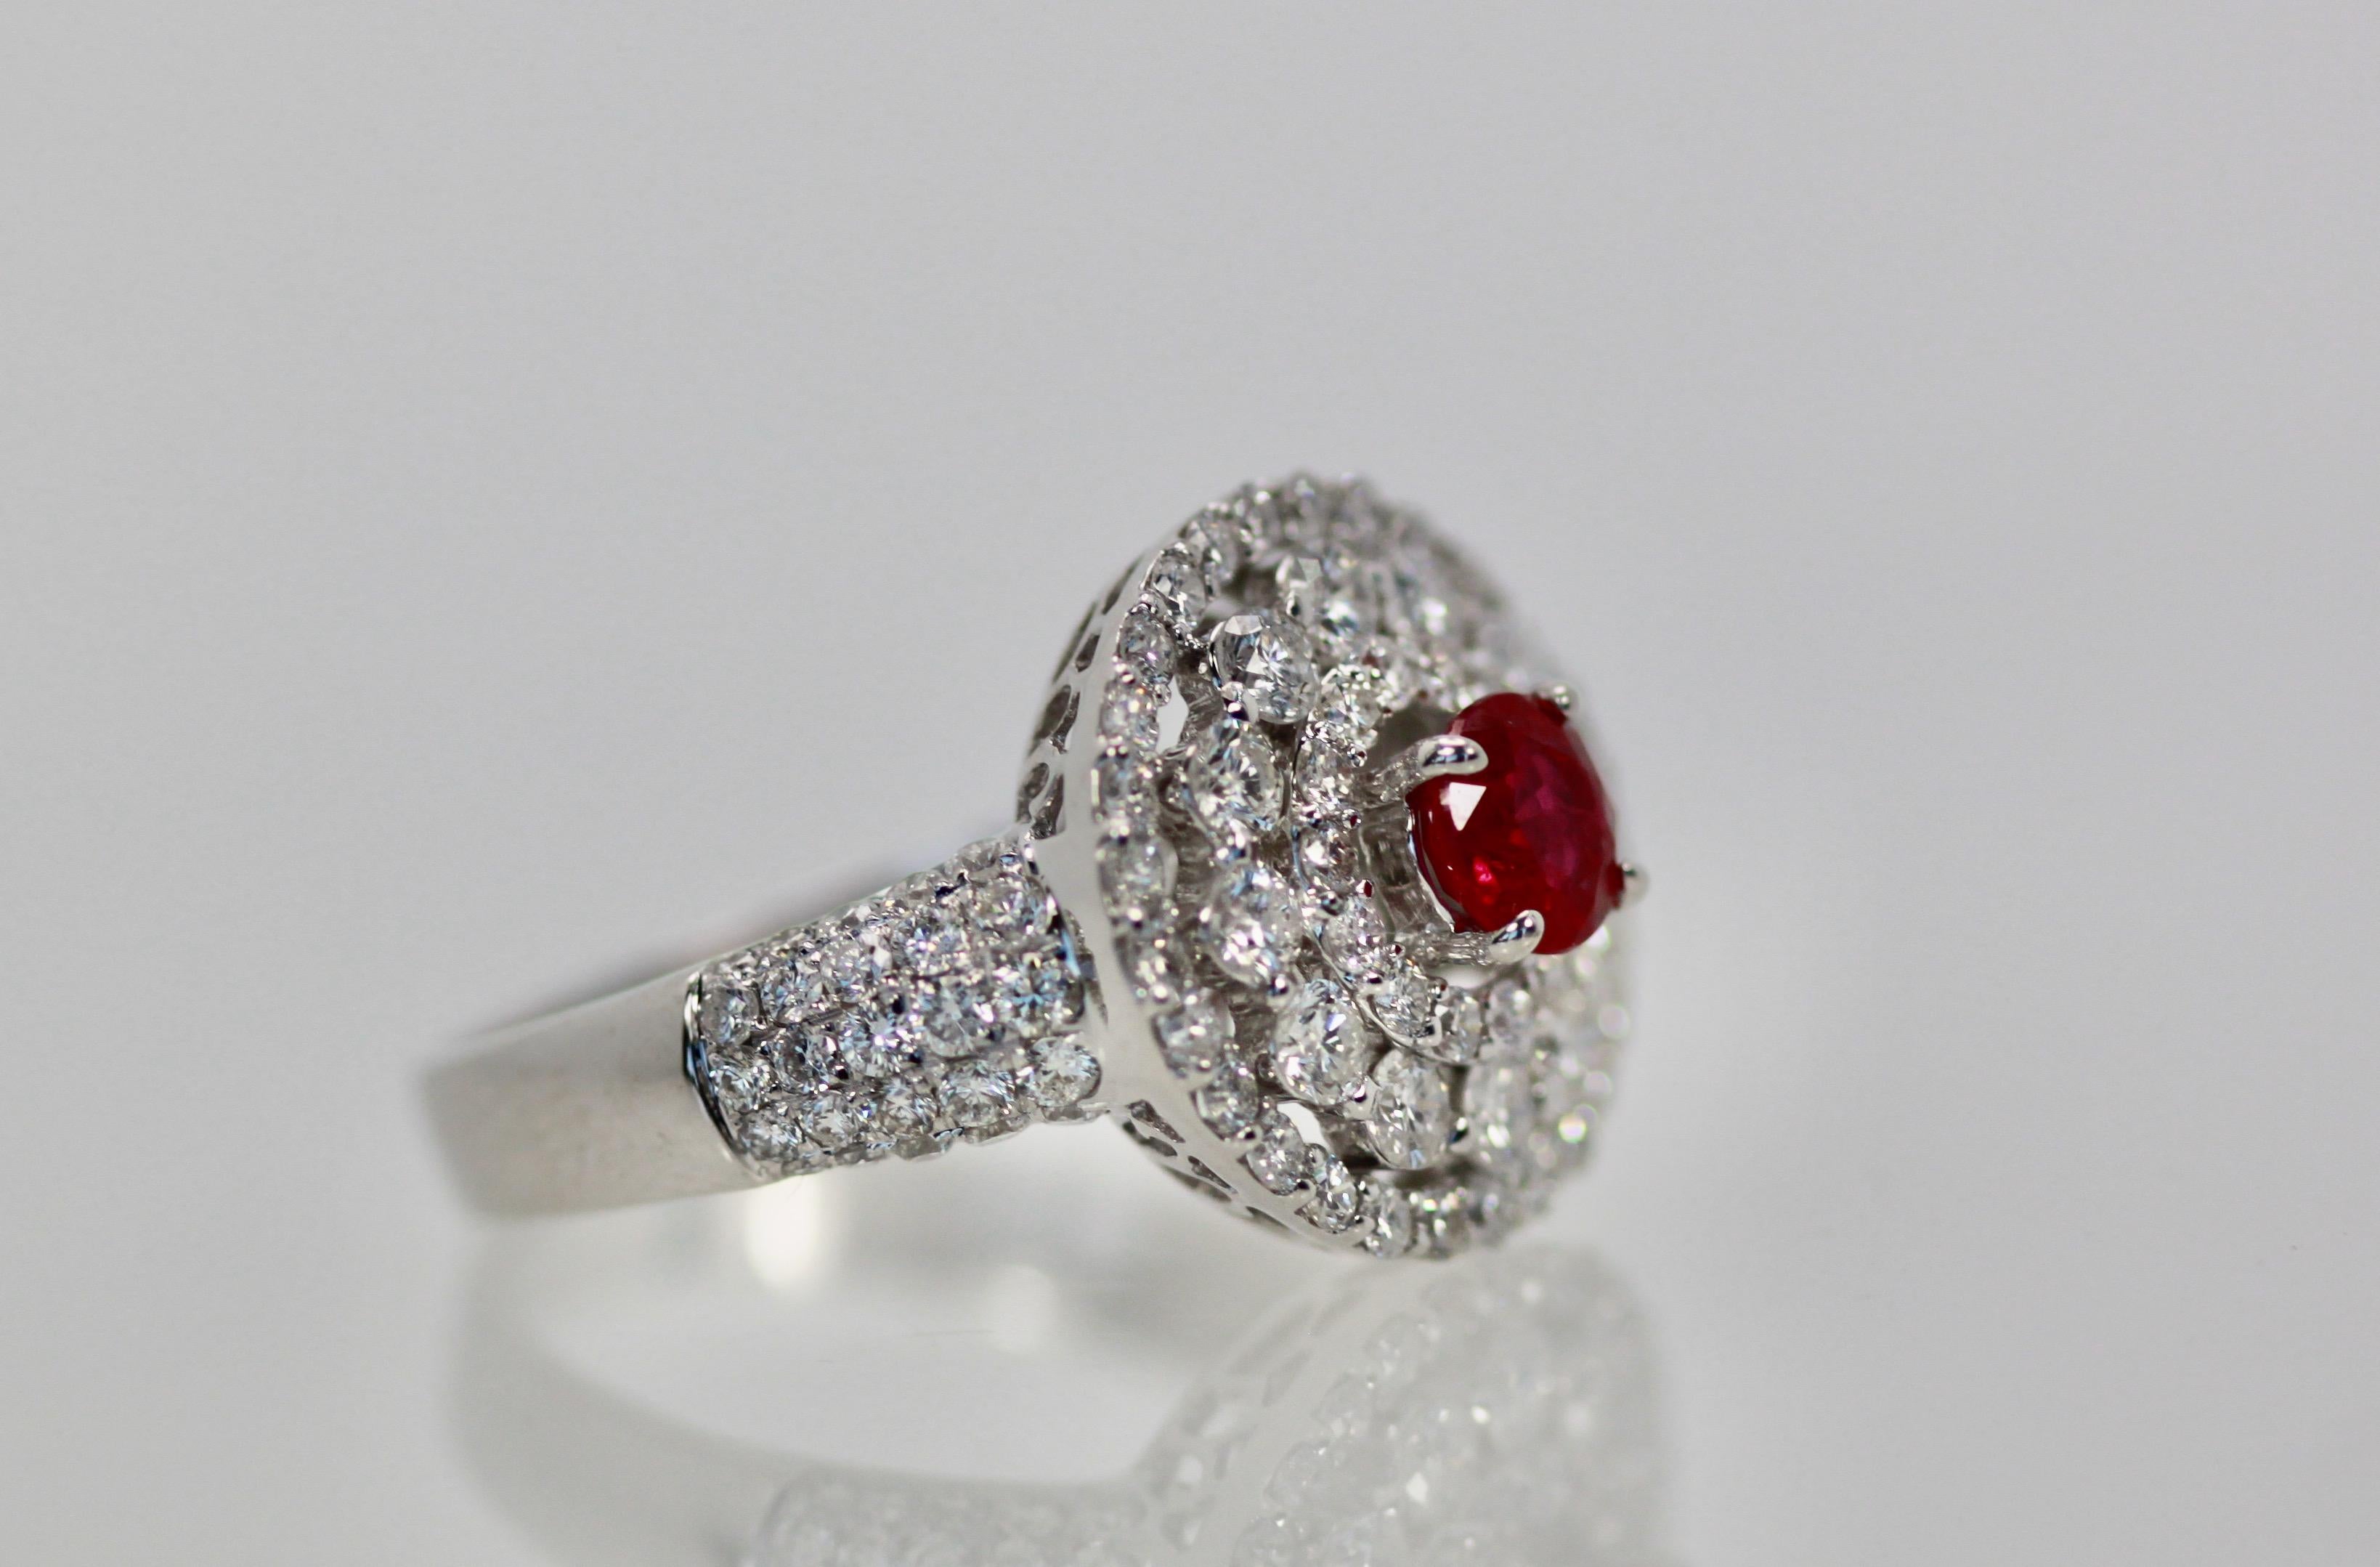 Cette bague Target est recouverte de diamants de couleur G, pureté VS-SI et est centrée sur un rubis rouge cerise.  Les anneaux sont ronds de 15,16 mm et le Rubis d'environ 0,60 carats, véritable rouge cerise.  Cette bague a du bling bling mais il